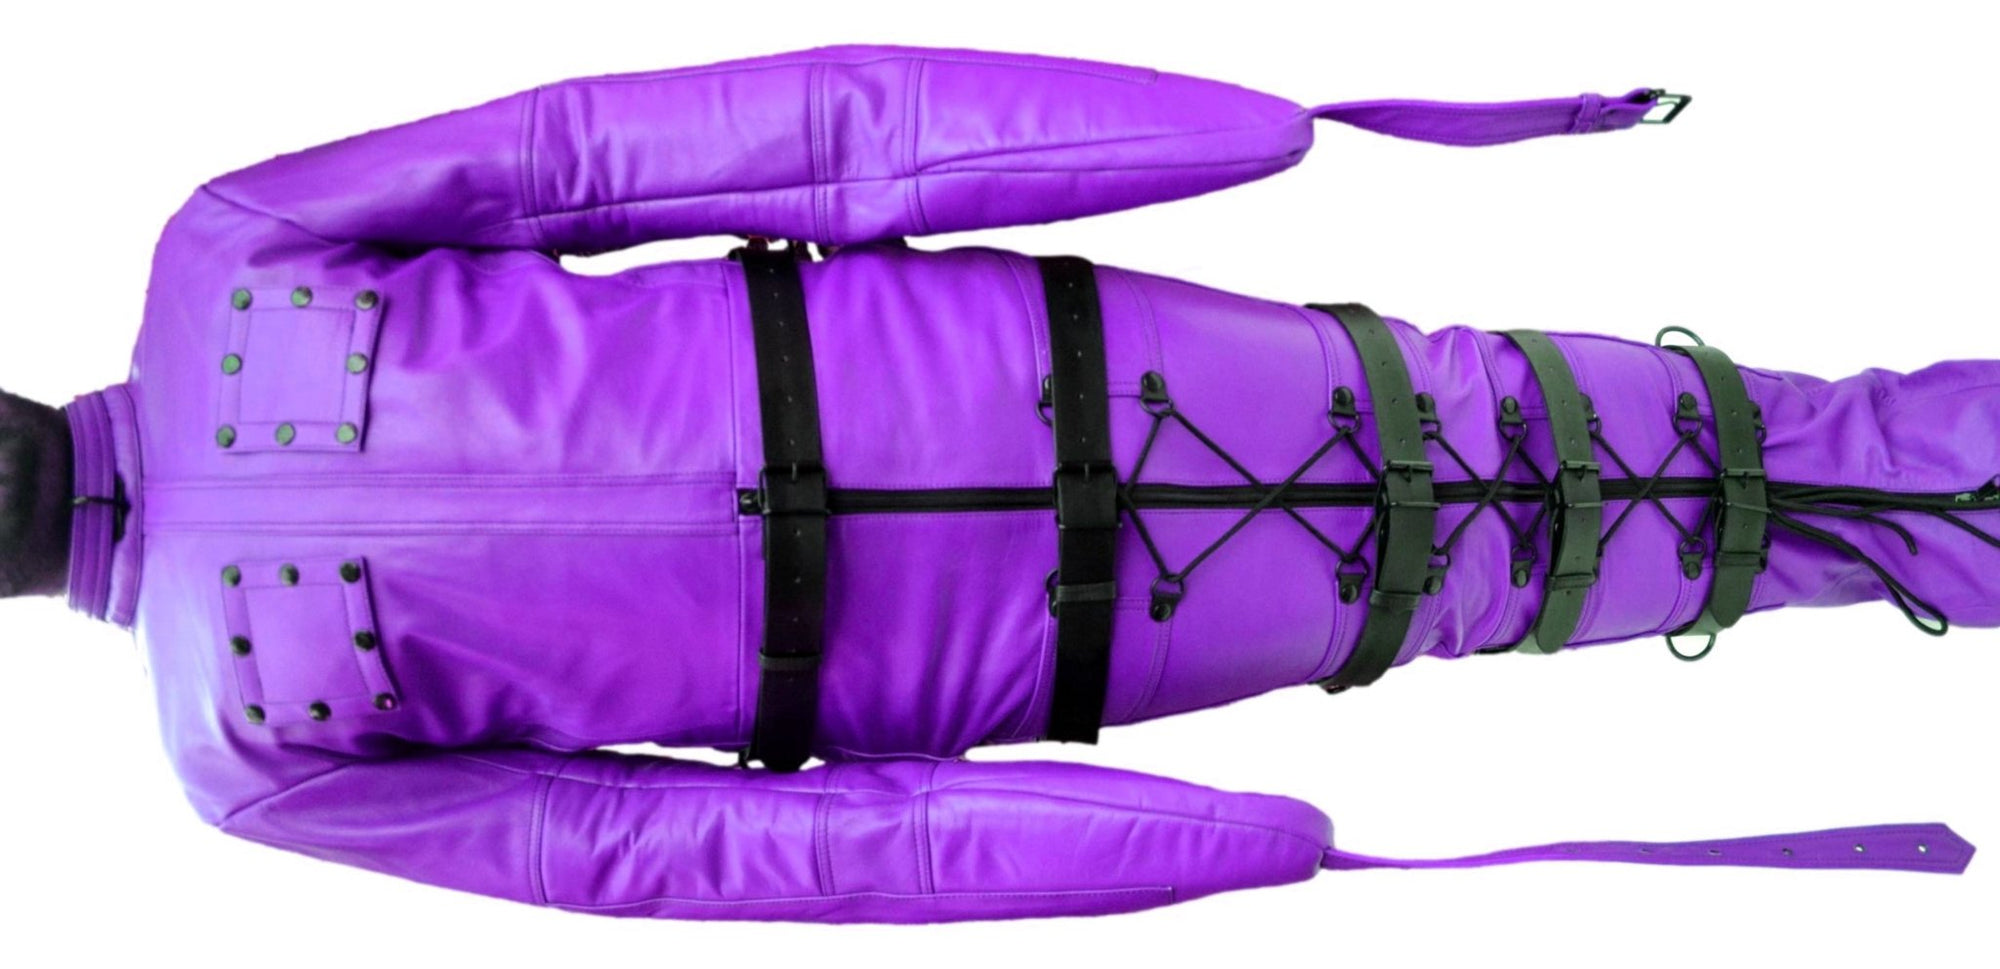 Leather Sleep Sack,Restraint,Bondage,Leather SleepSack,Purple - MRI Leathers